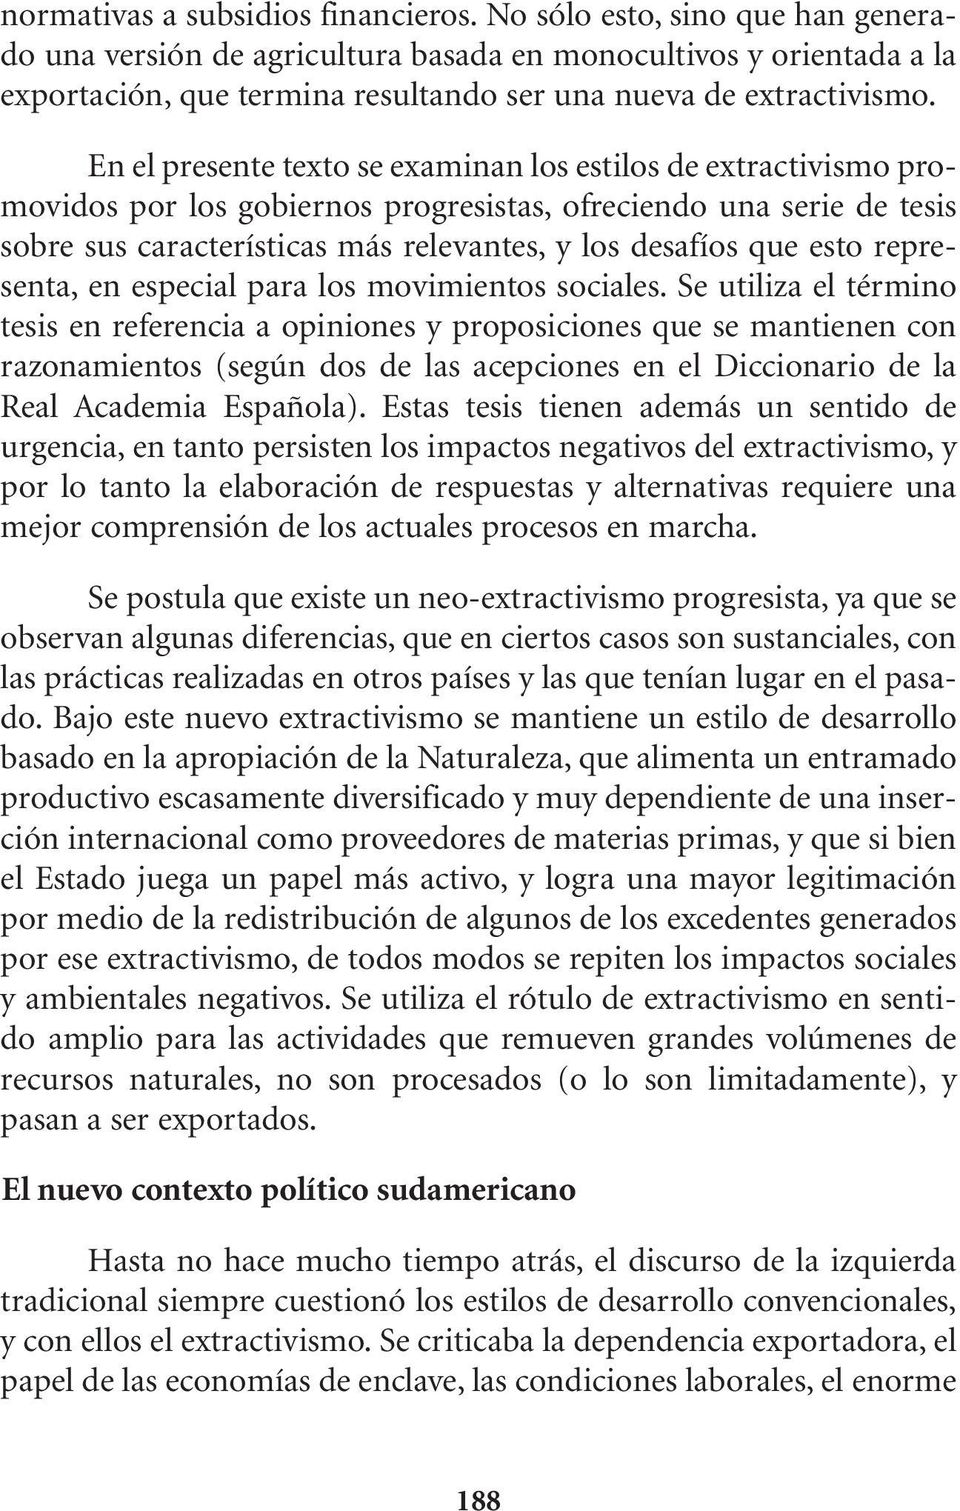 En el presente texto se examinan los estilos de extractivismo promovidos por los gobiernos progresistas, ofreciendo una serie de tesis sobre sus características más relevantes, y los desafíos que